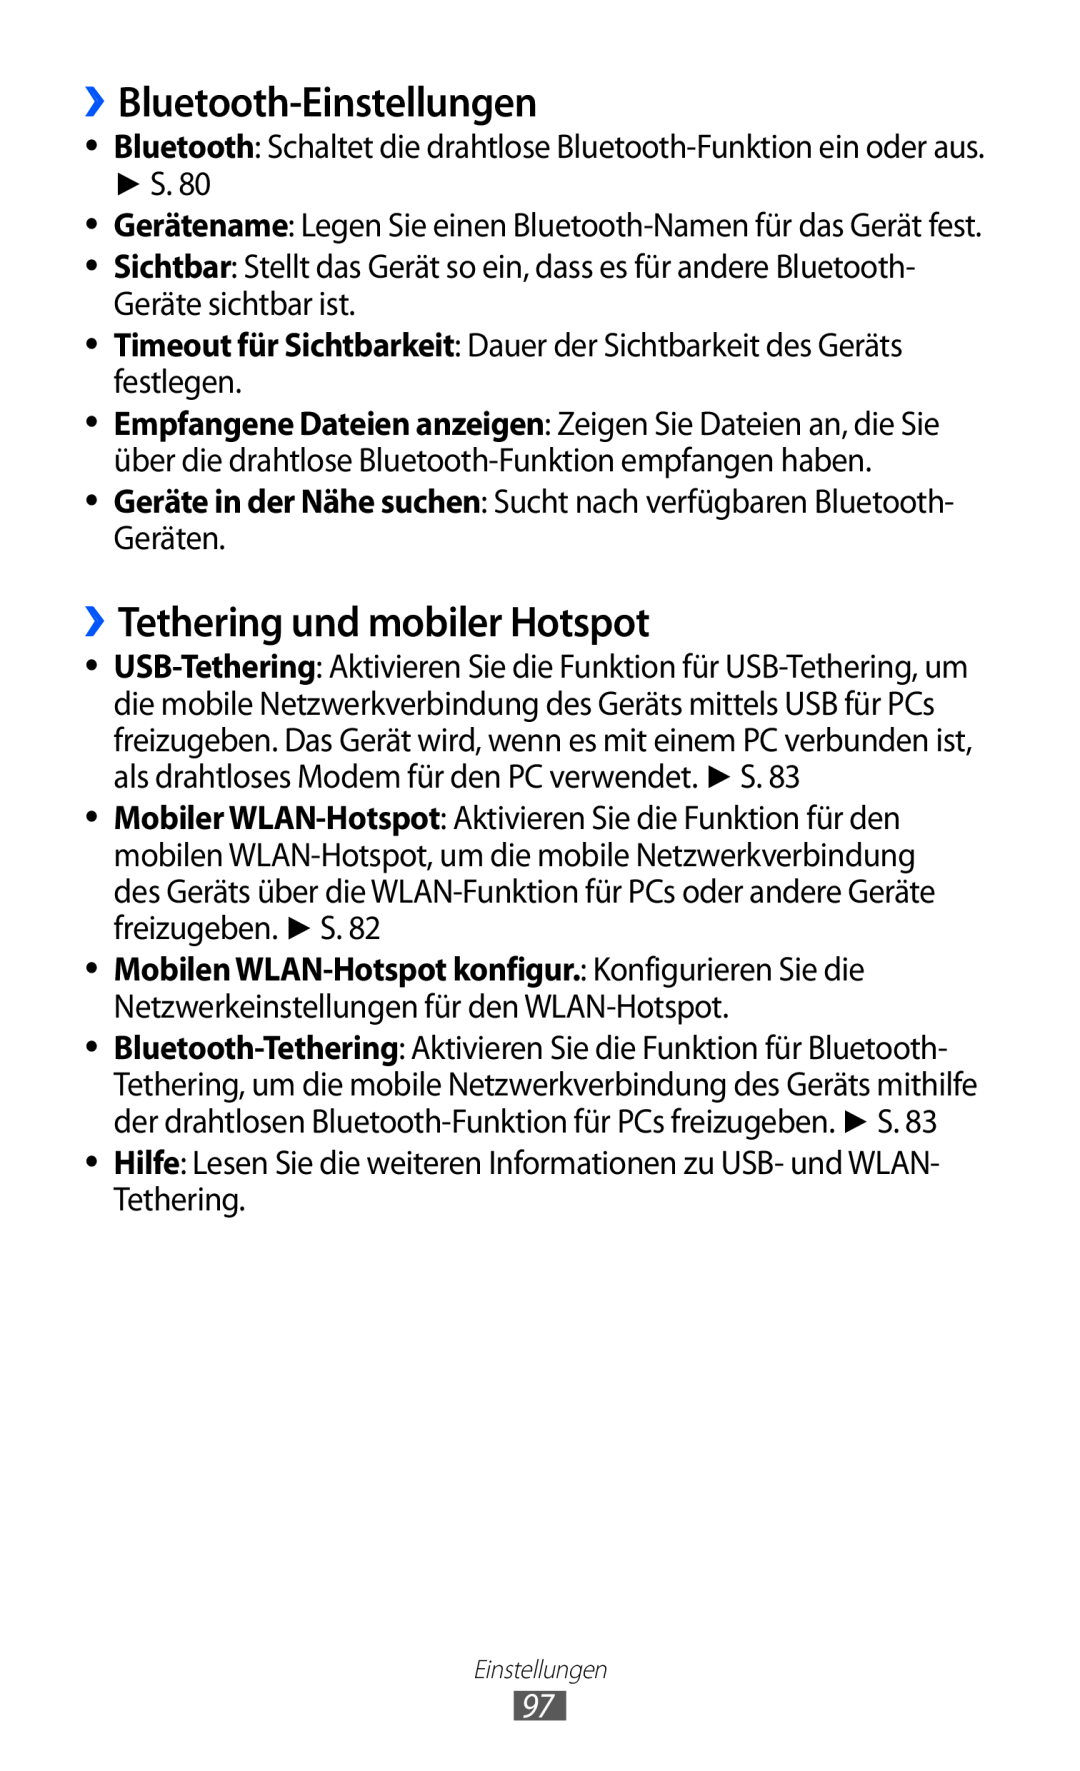 Samsung GT-P7501UWDVIA, GT-P7501UWEDBT, GT-P7501FKDDTM manual ››Bluetooth-Einstellungen, ››Tethering und mobiler Hotspot 